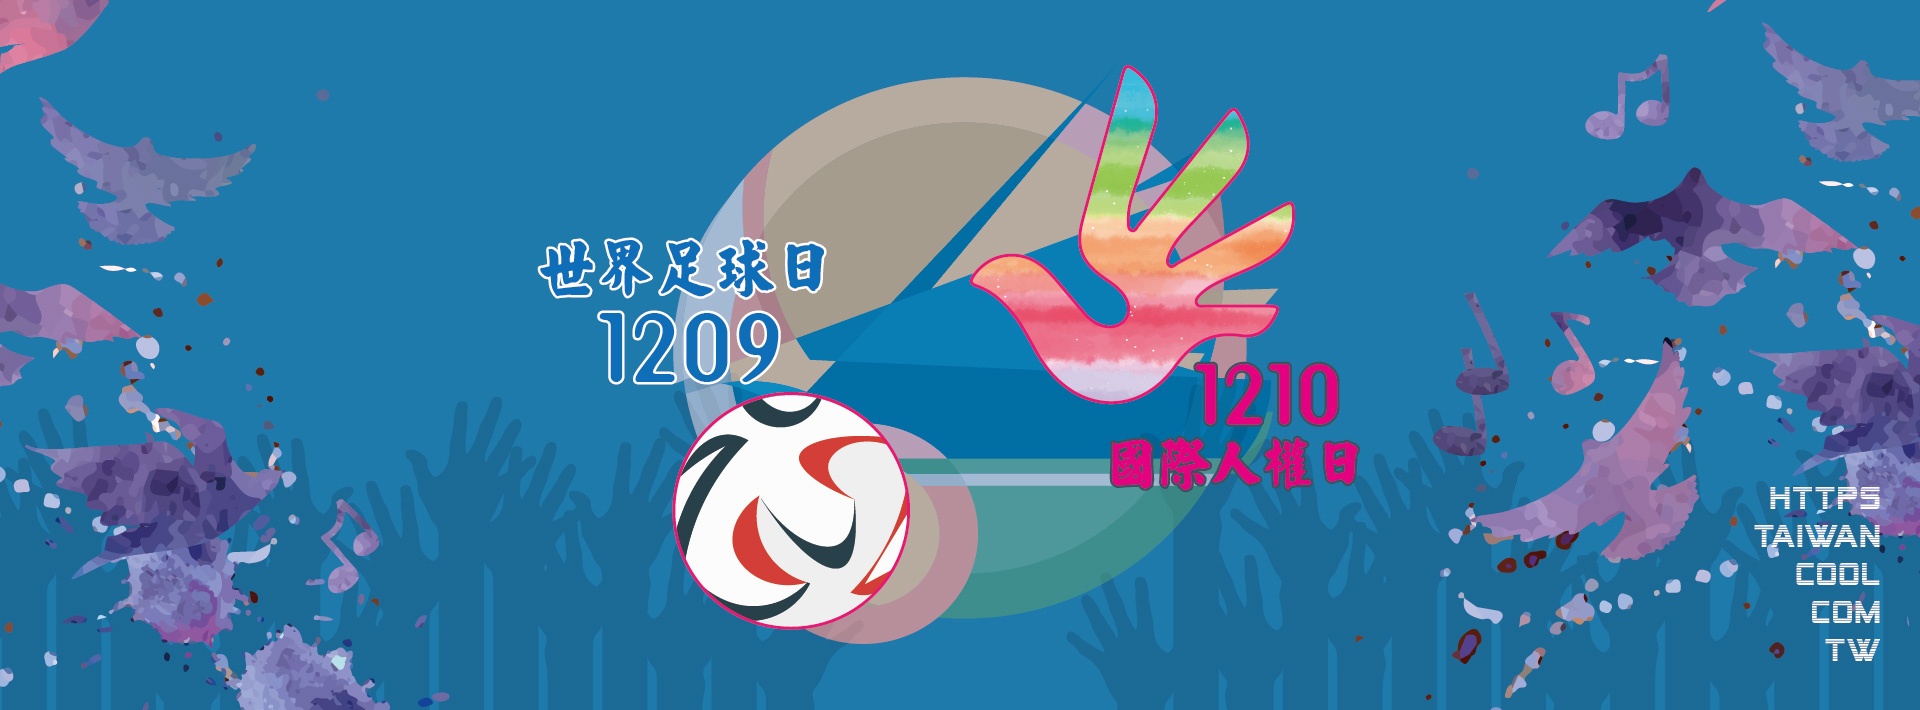 世界足球日與國際人權日